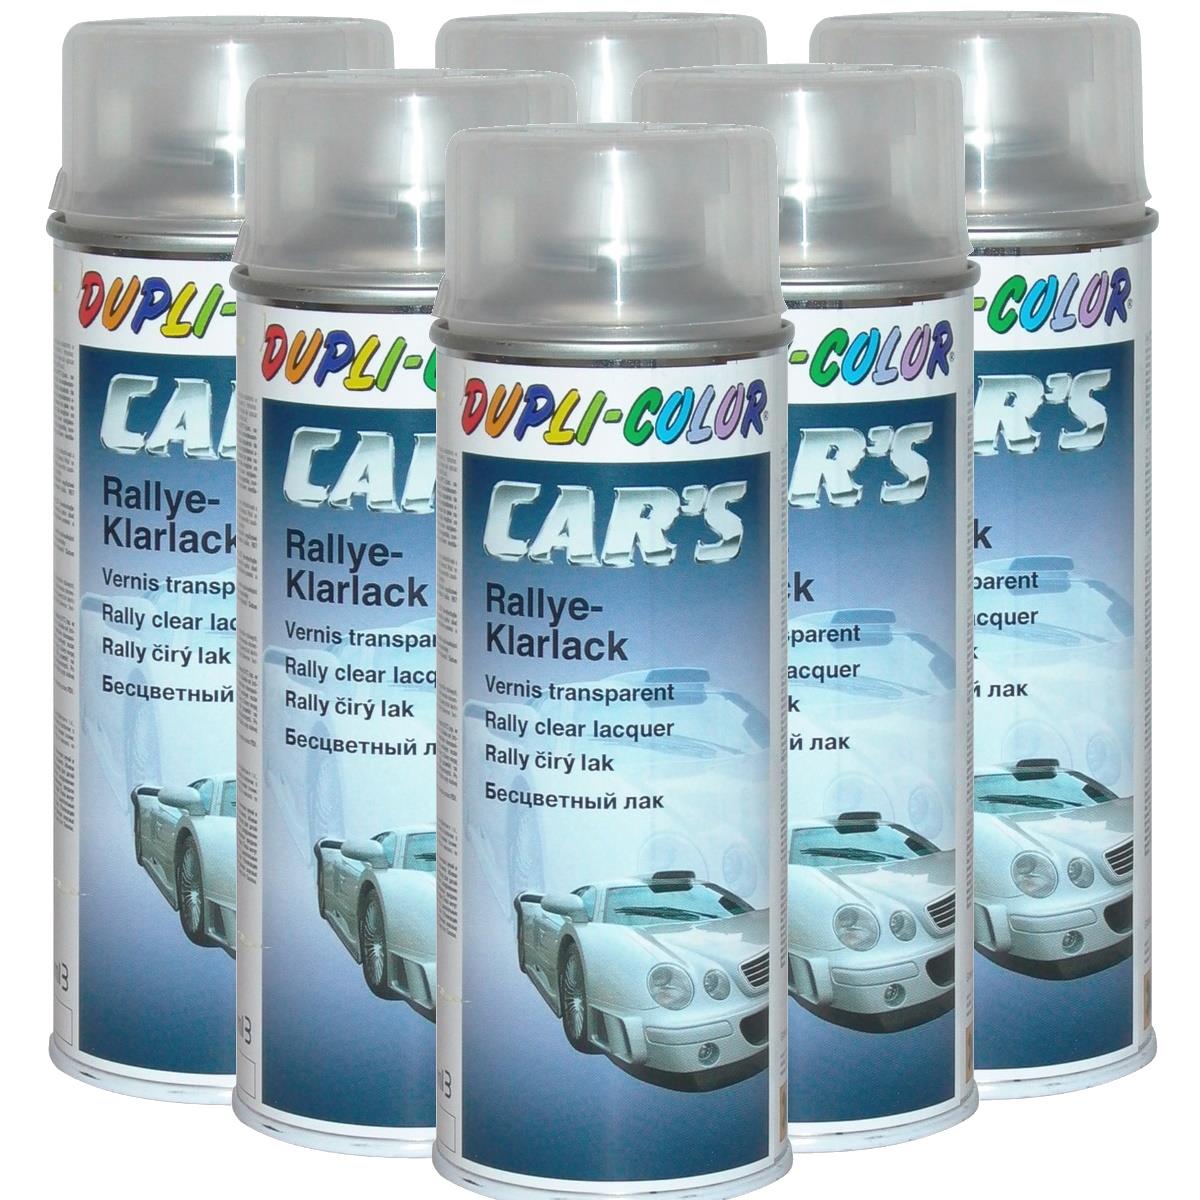 Duplicolor Car's Rallye Lack vernis brillant 6x 400 ml., Peintures & vernis, Matériel de peinture, Entretien, Huiles & Liquides